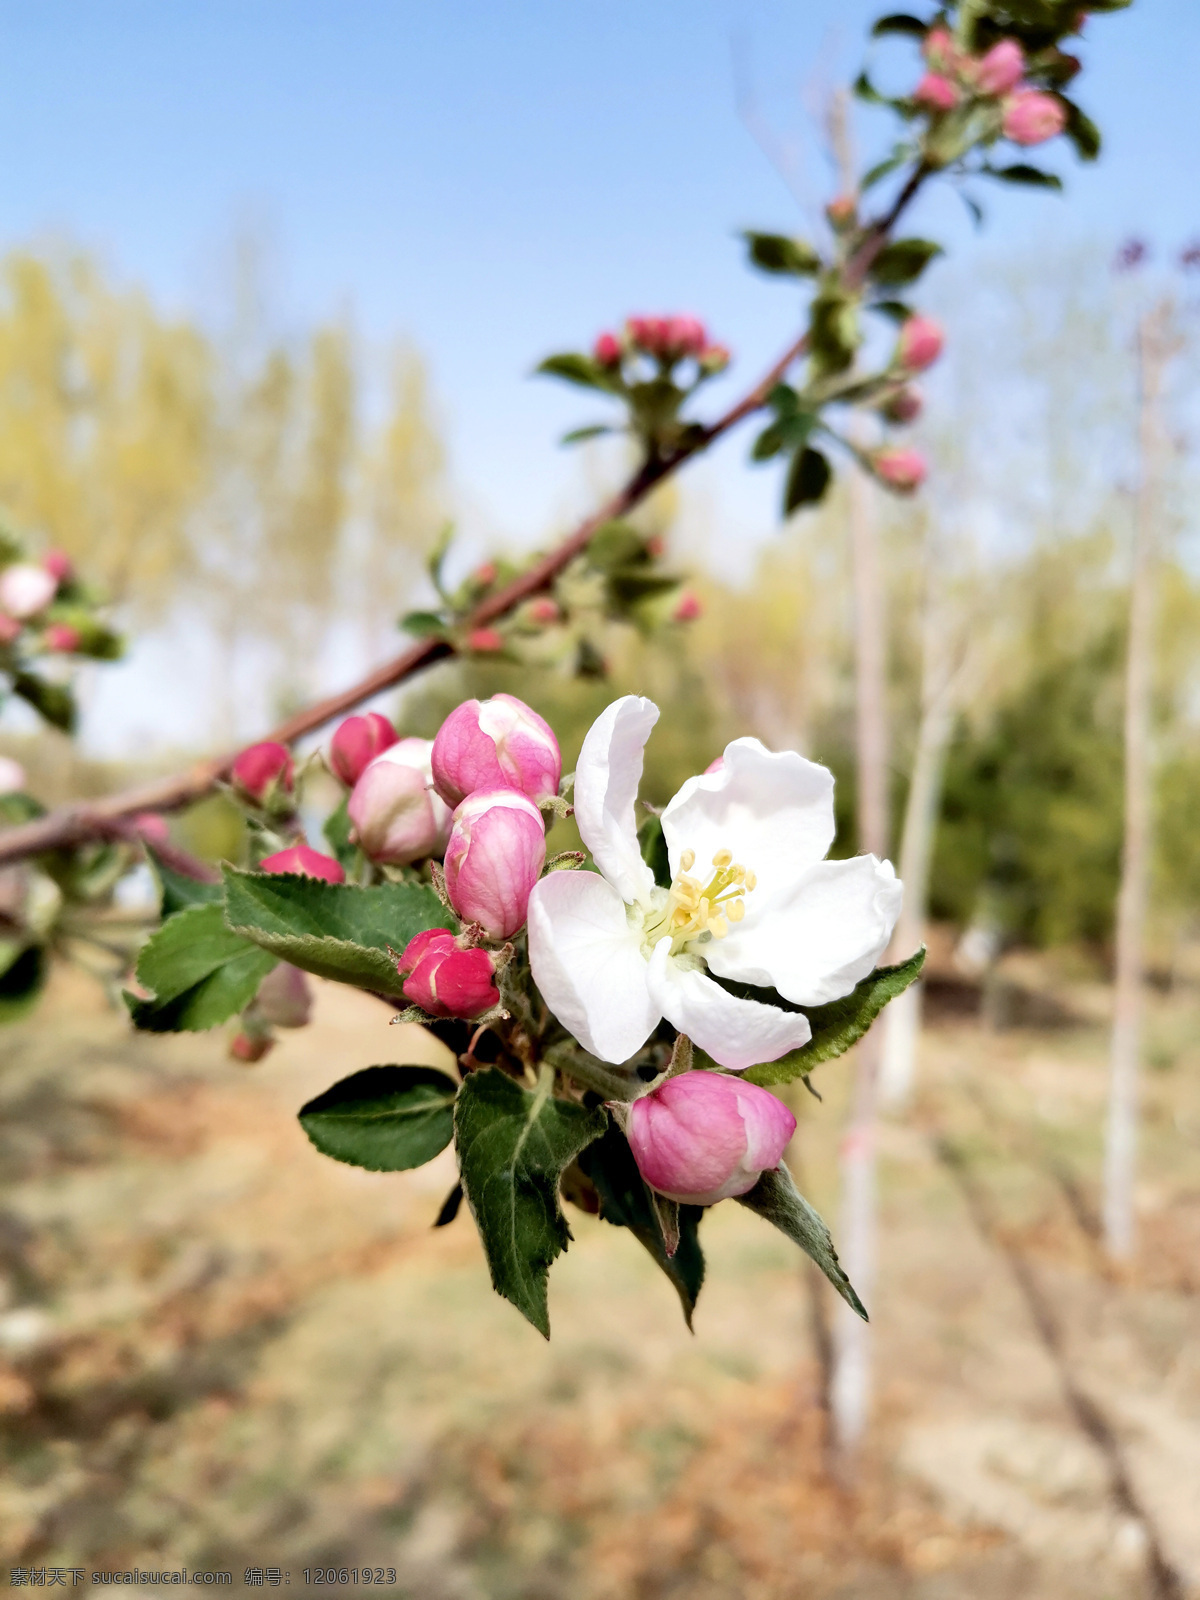 苹果花蕾 花蕾照片 花朵 花卉 种植 花瓣 鲜花 植物 摄影素材 花草 苹果树 花蕾 摄影图片 生物世界